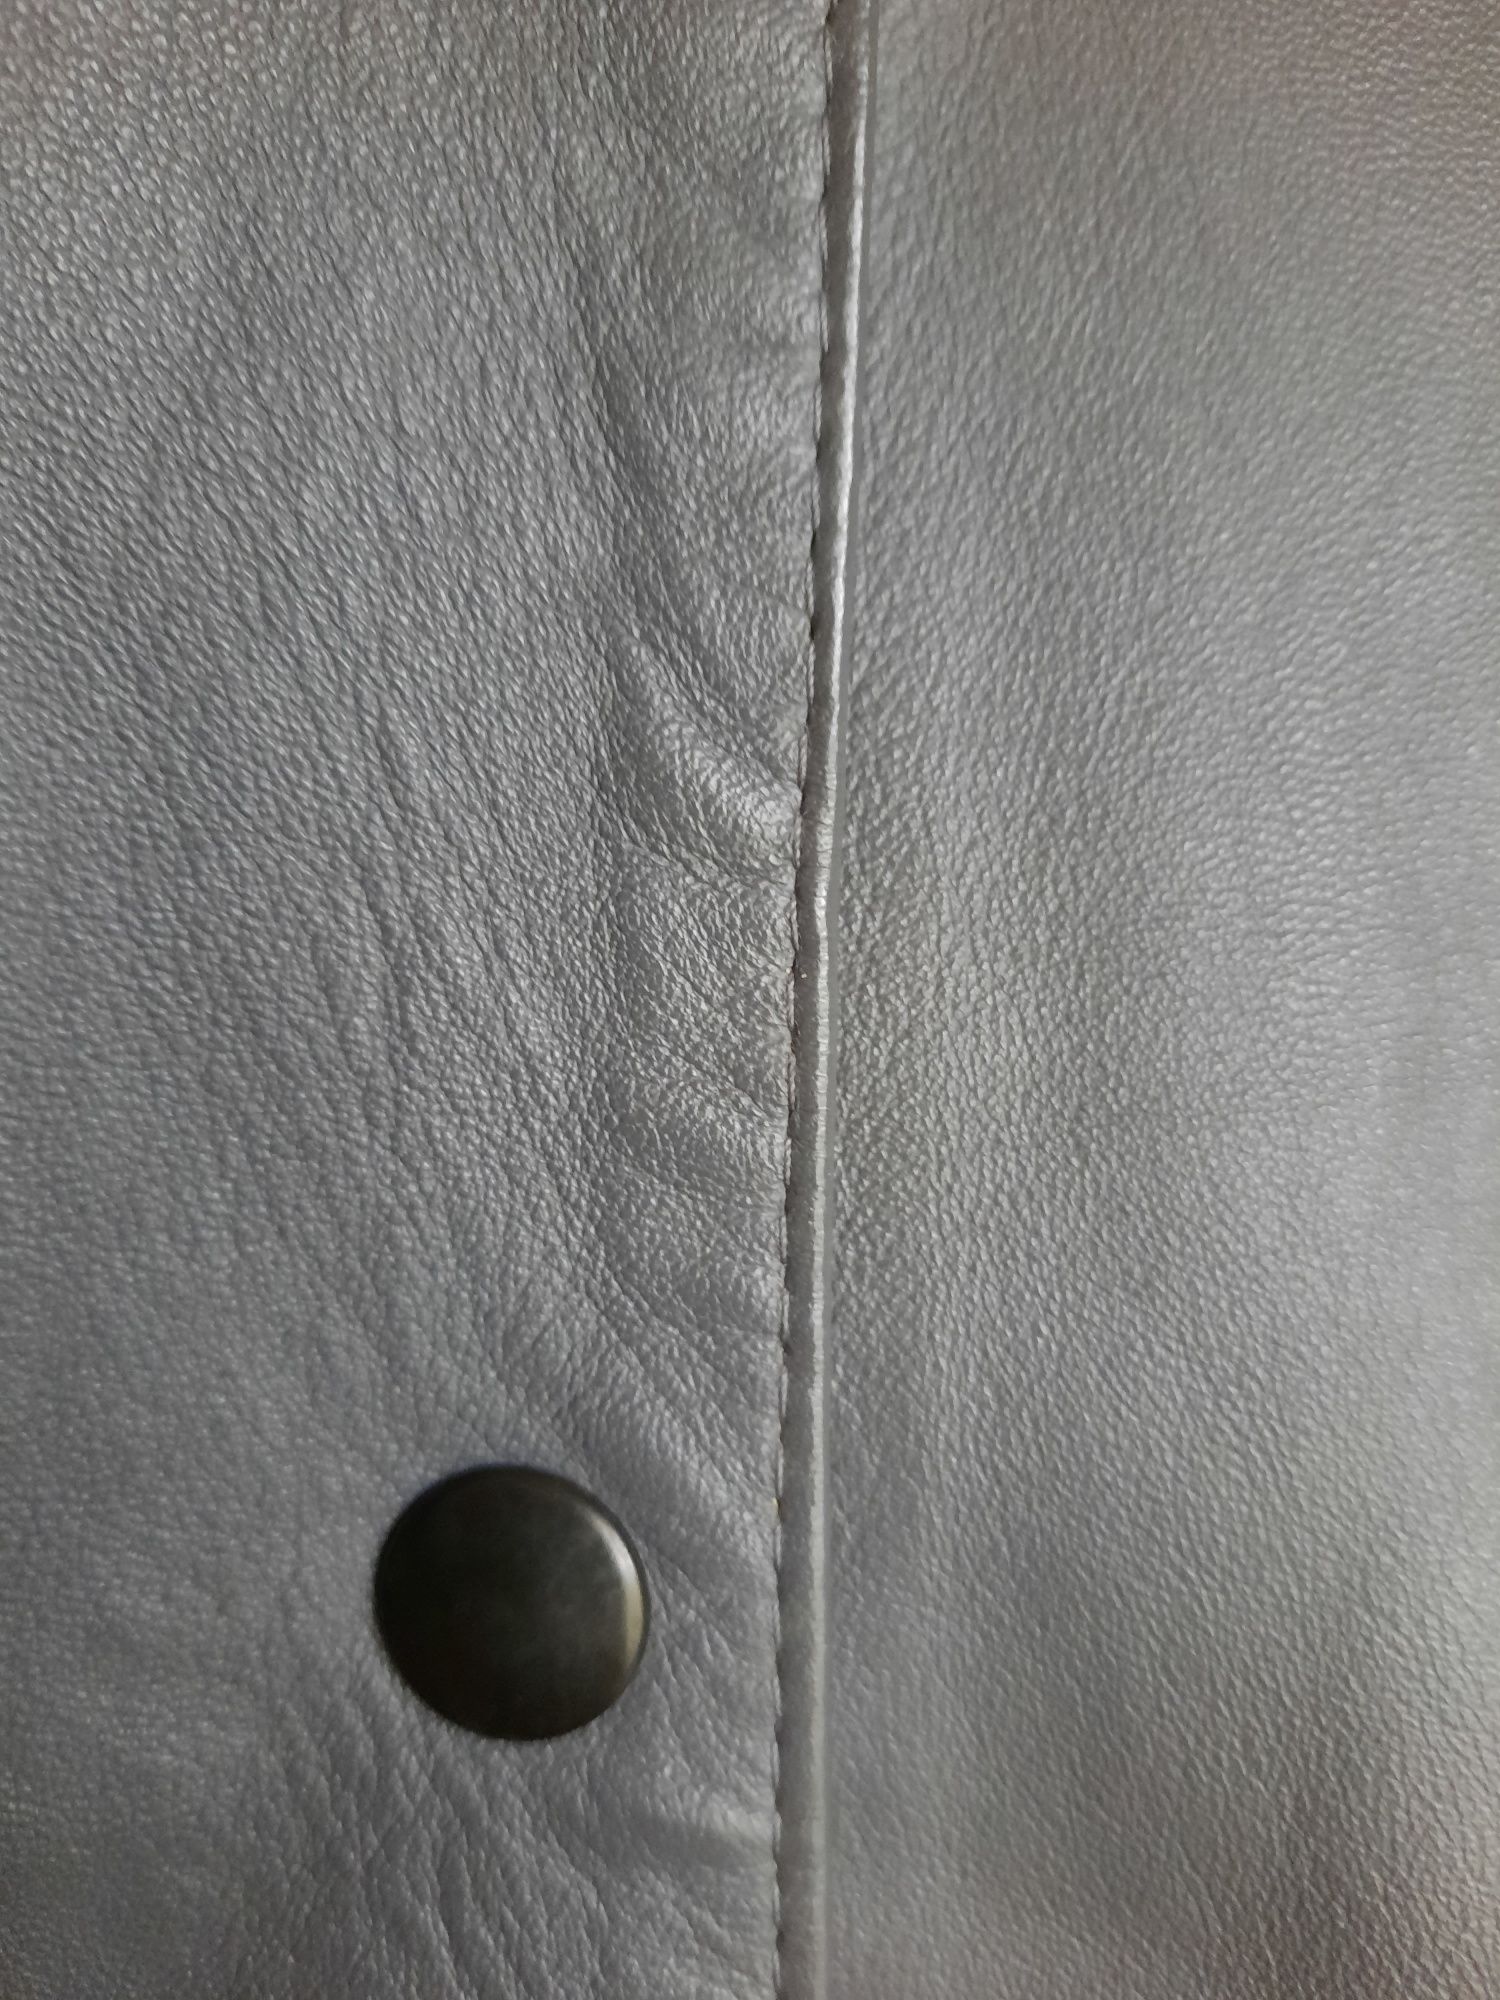 Куртка кожаная женская серая размер XS-S, -42-44